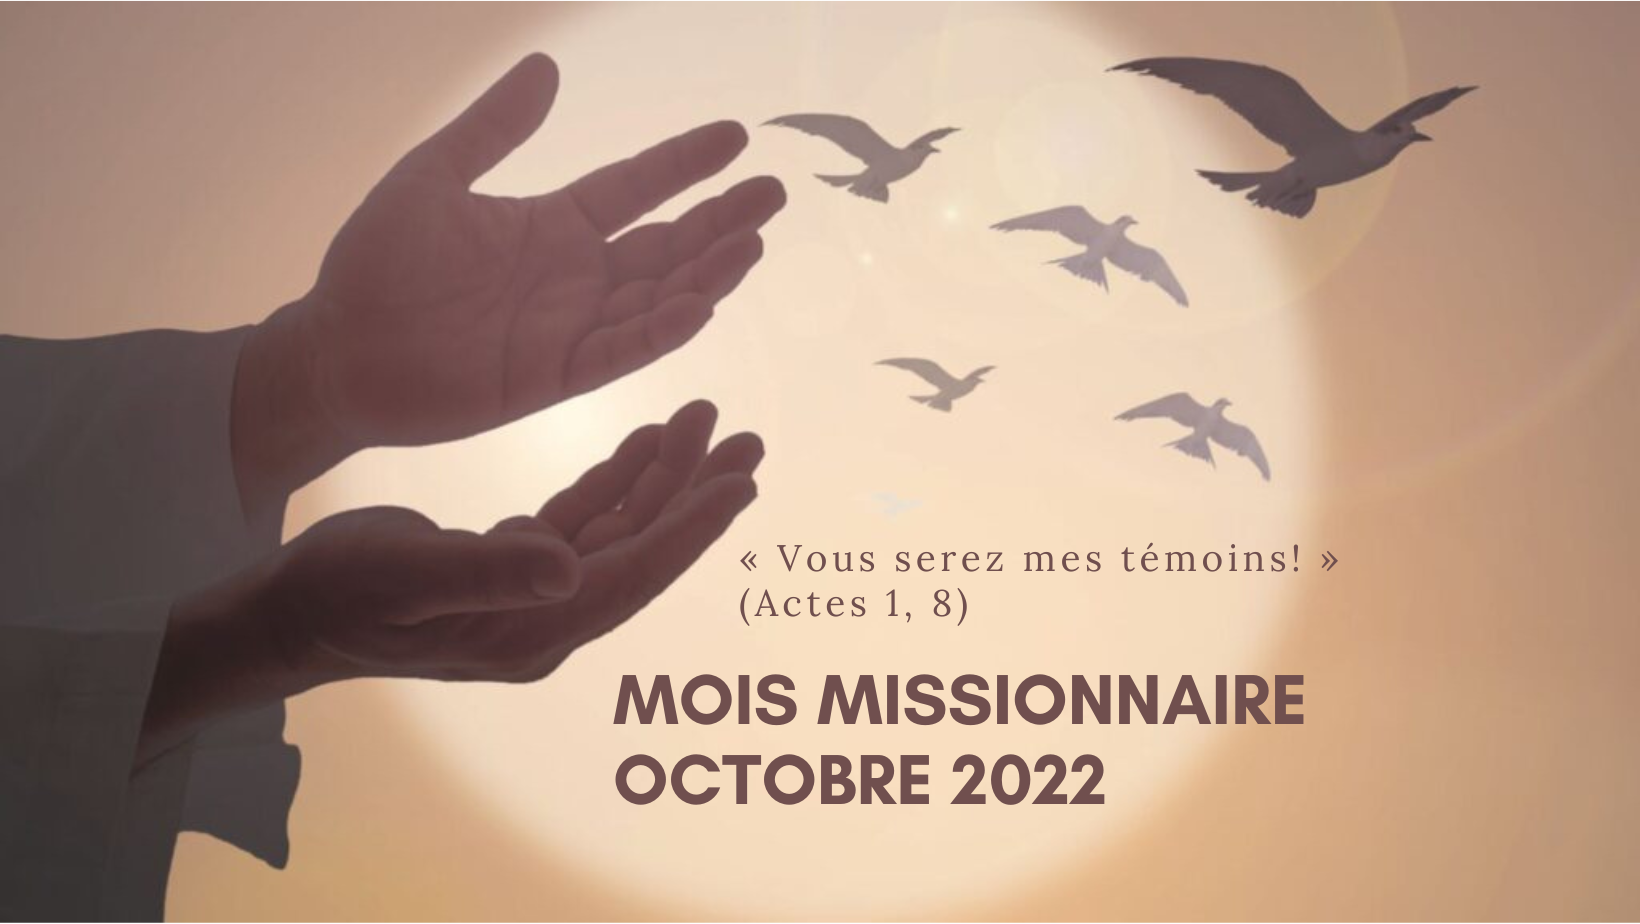 Mois missionnaire 2022